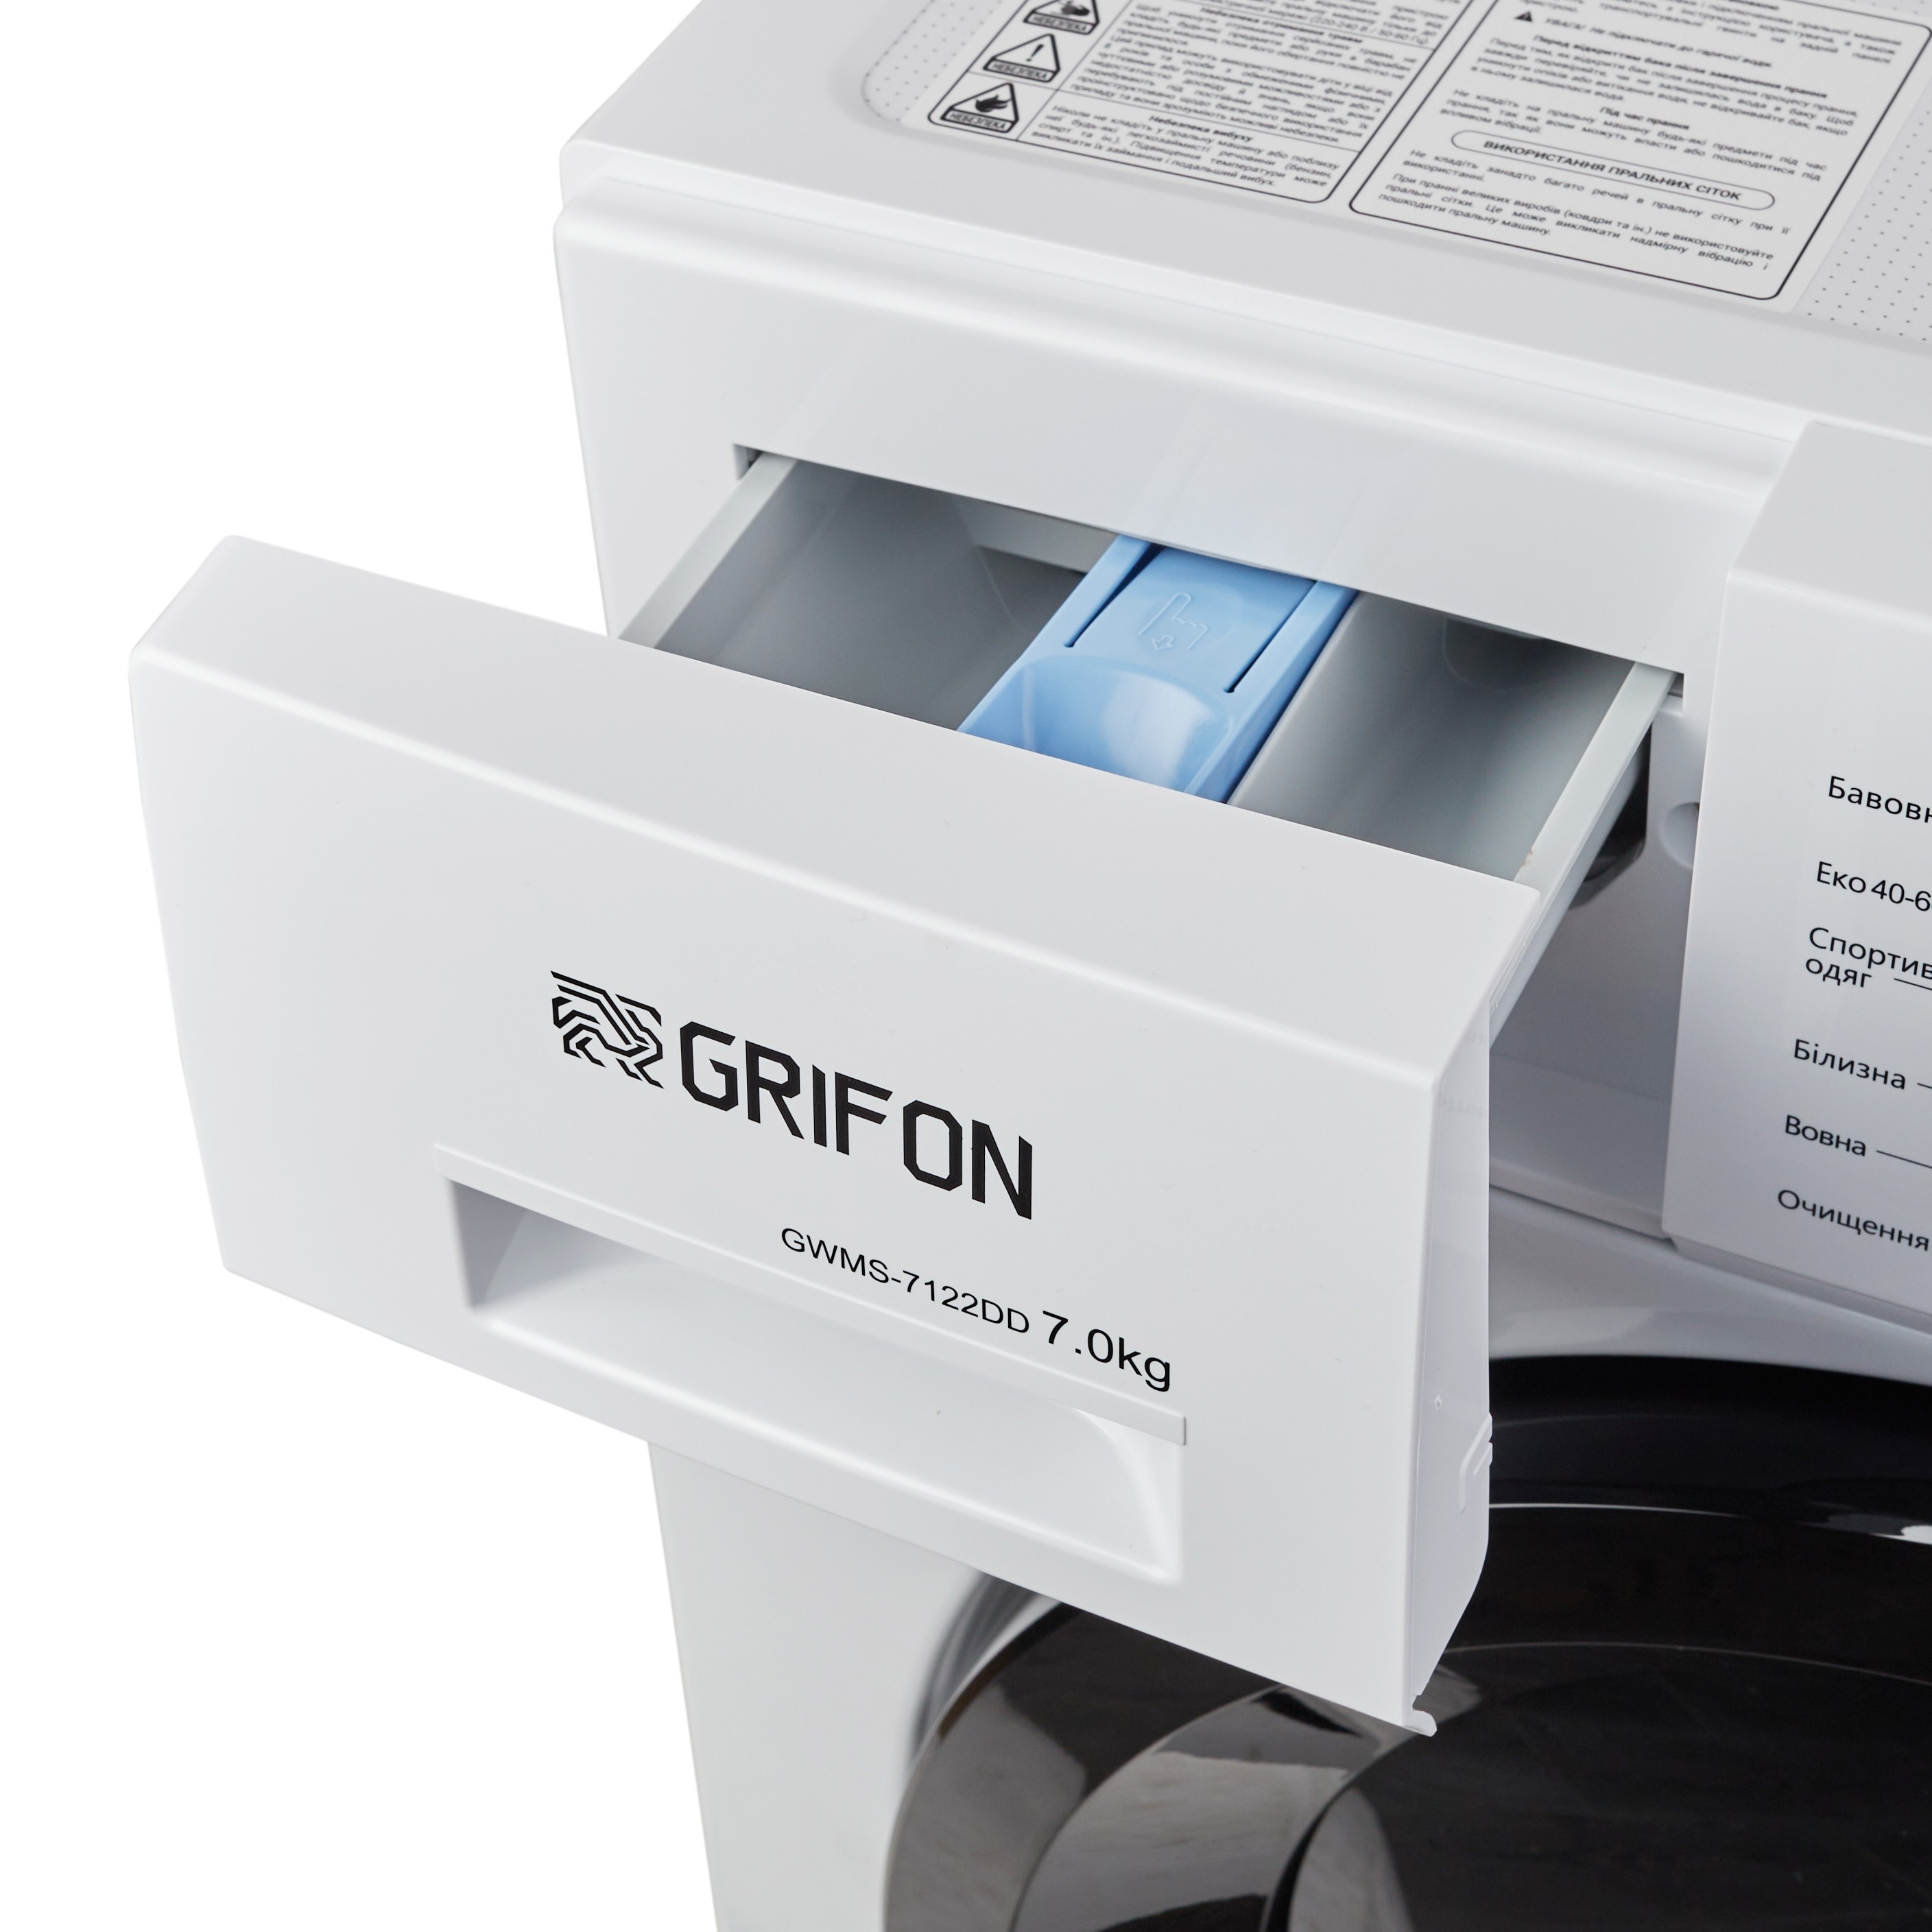 Стиральная машина Grifon GWMS-7122DD инструкция - изображение 6